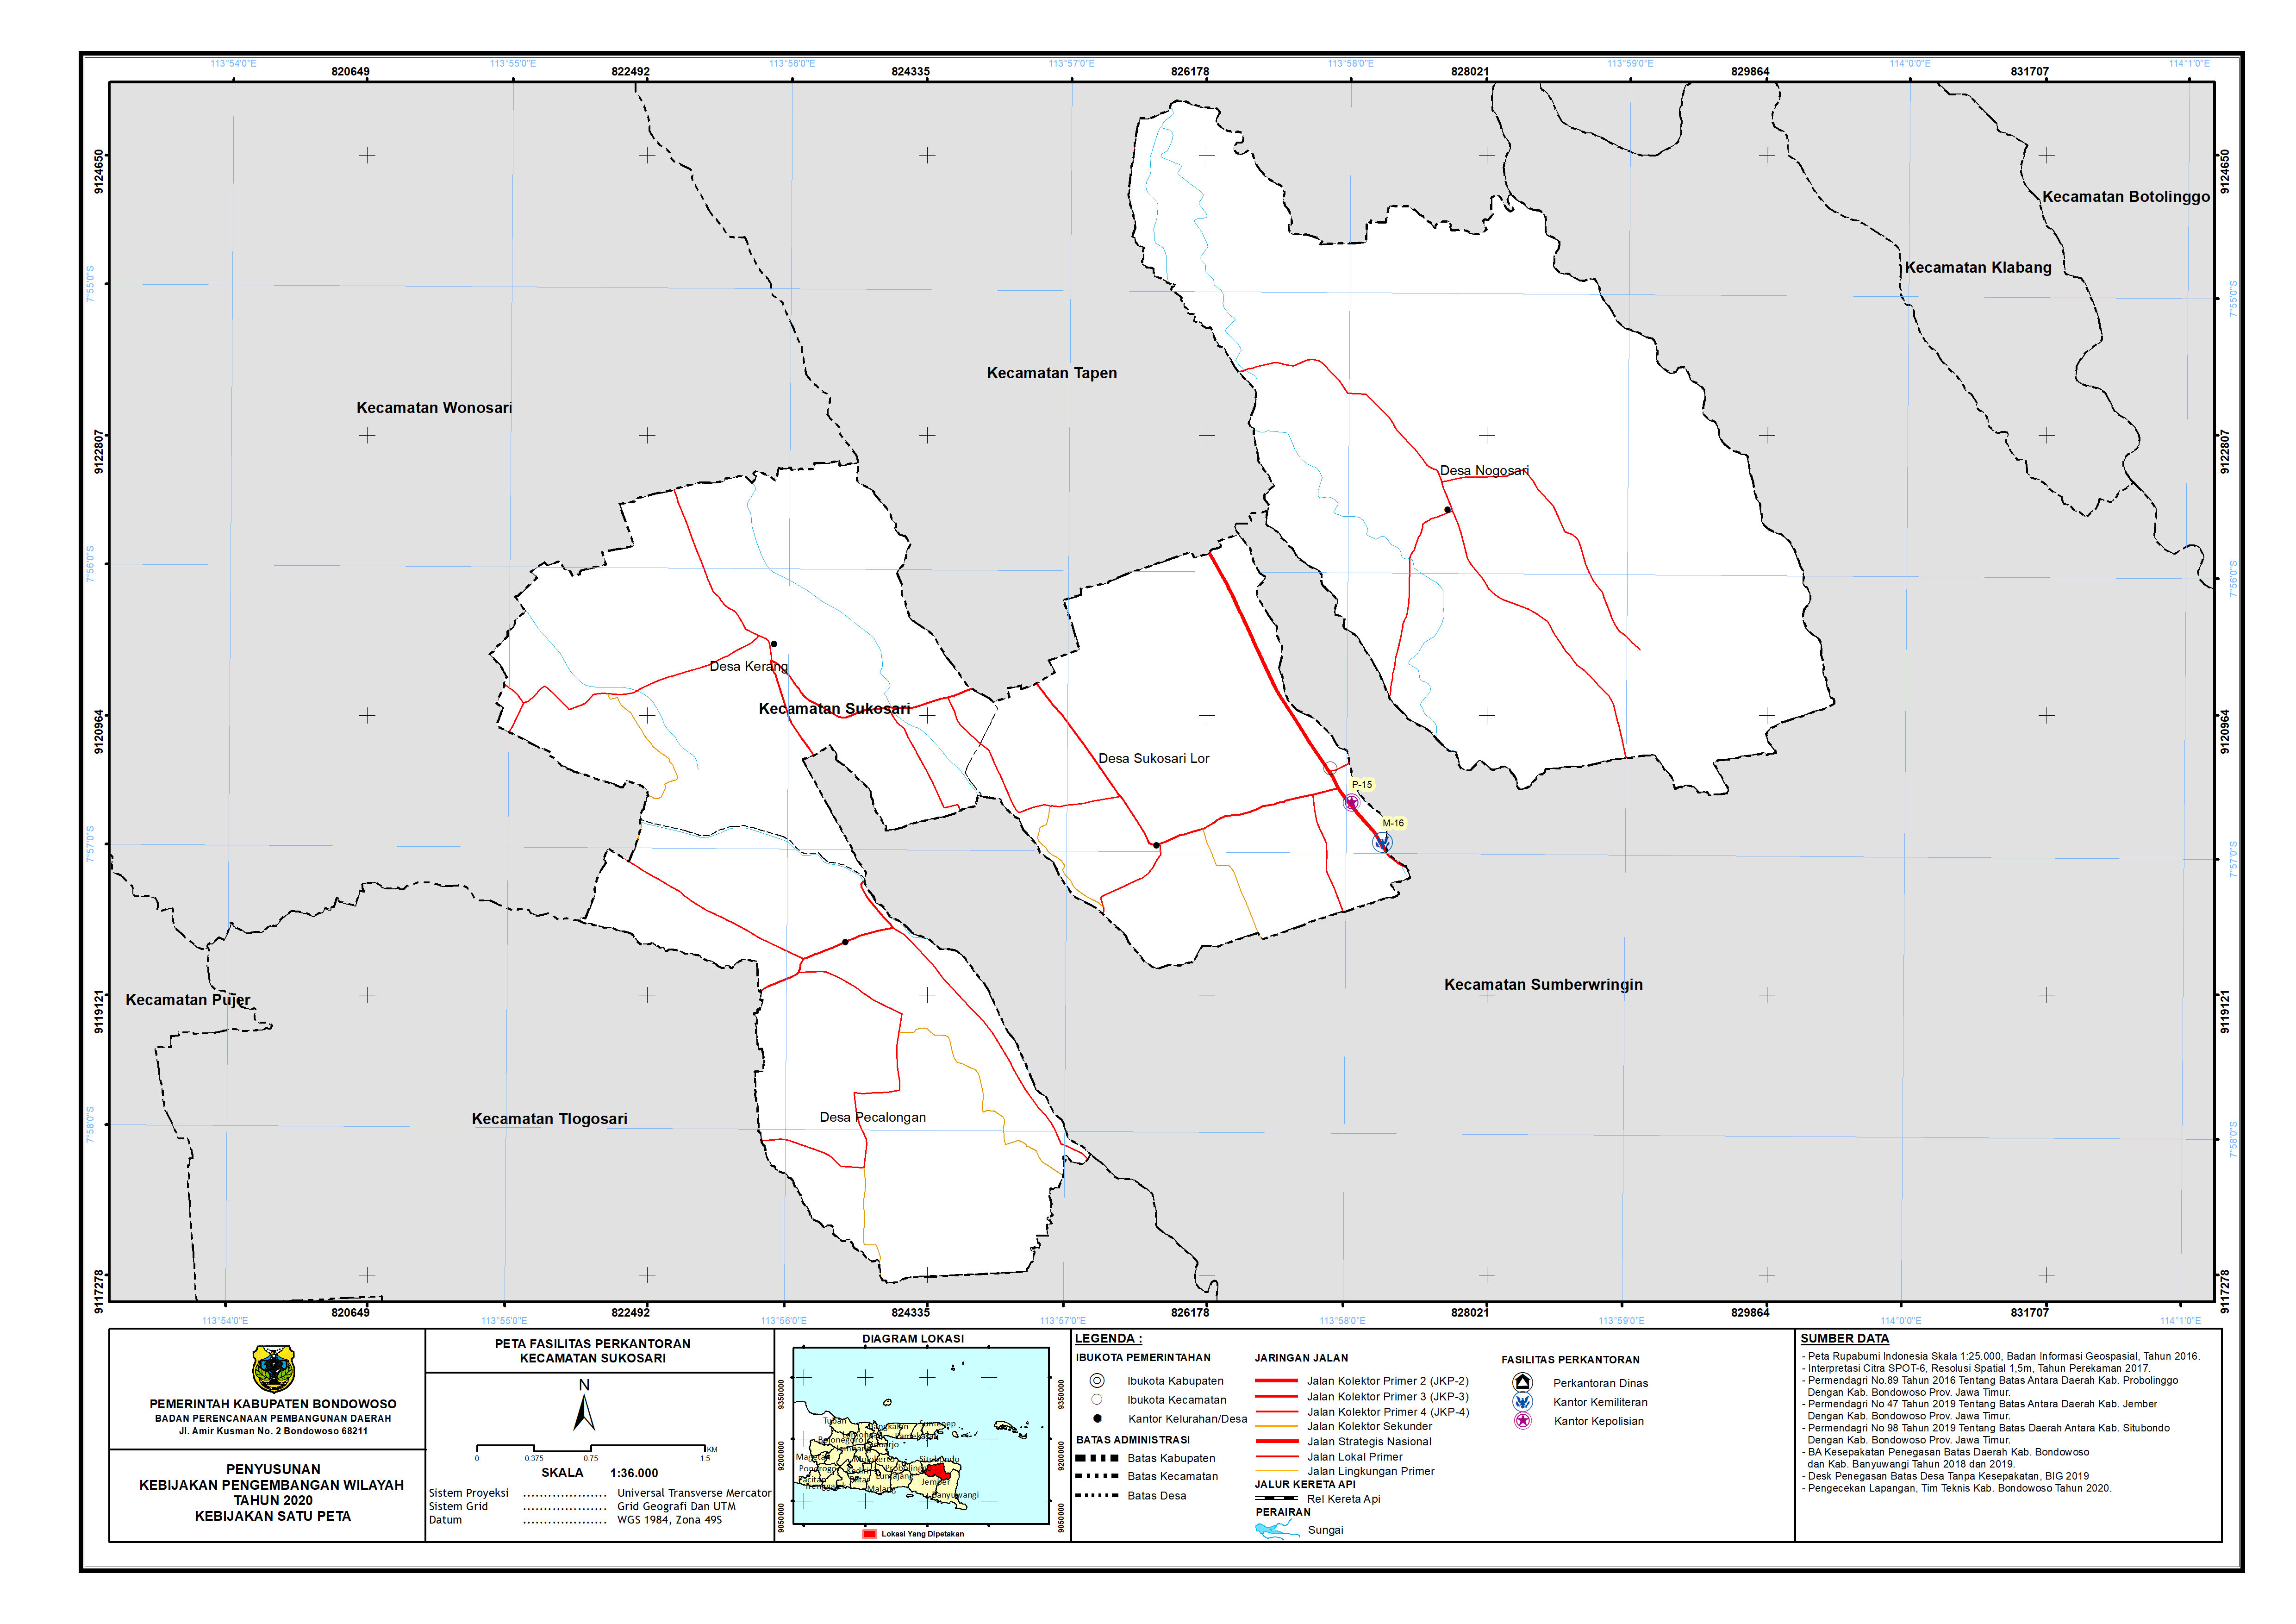 Peta Persebaran Perkantoran Kecamatan Sukosari.png